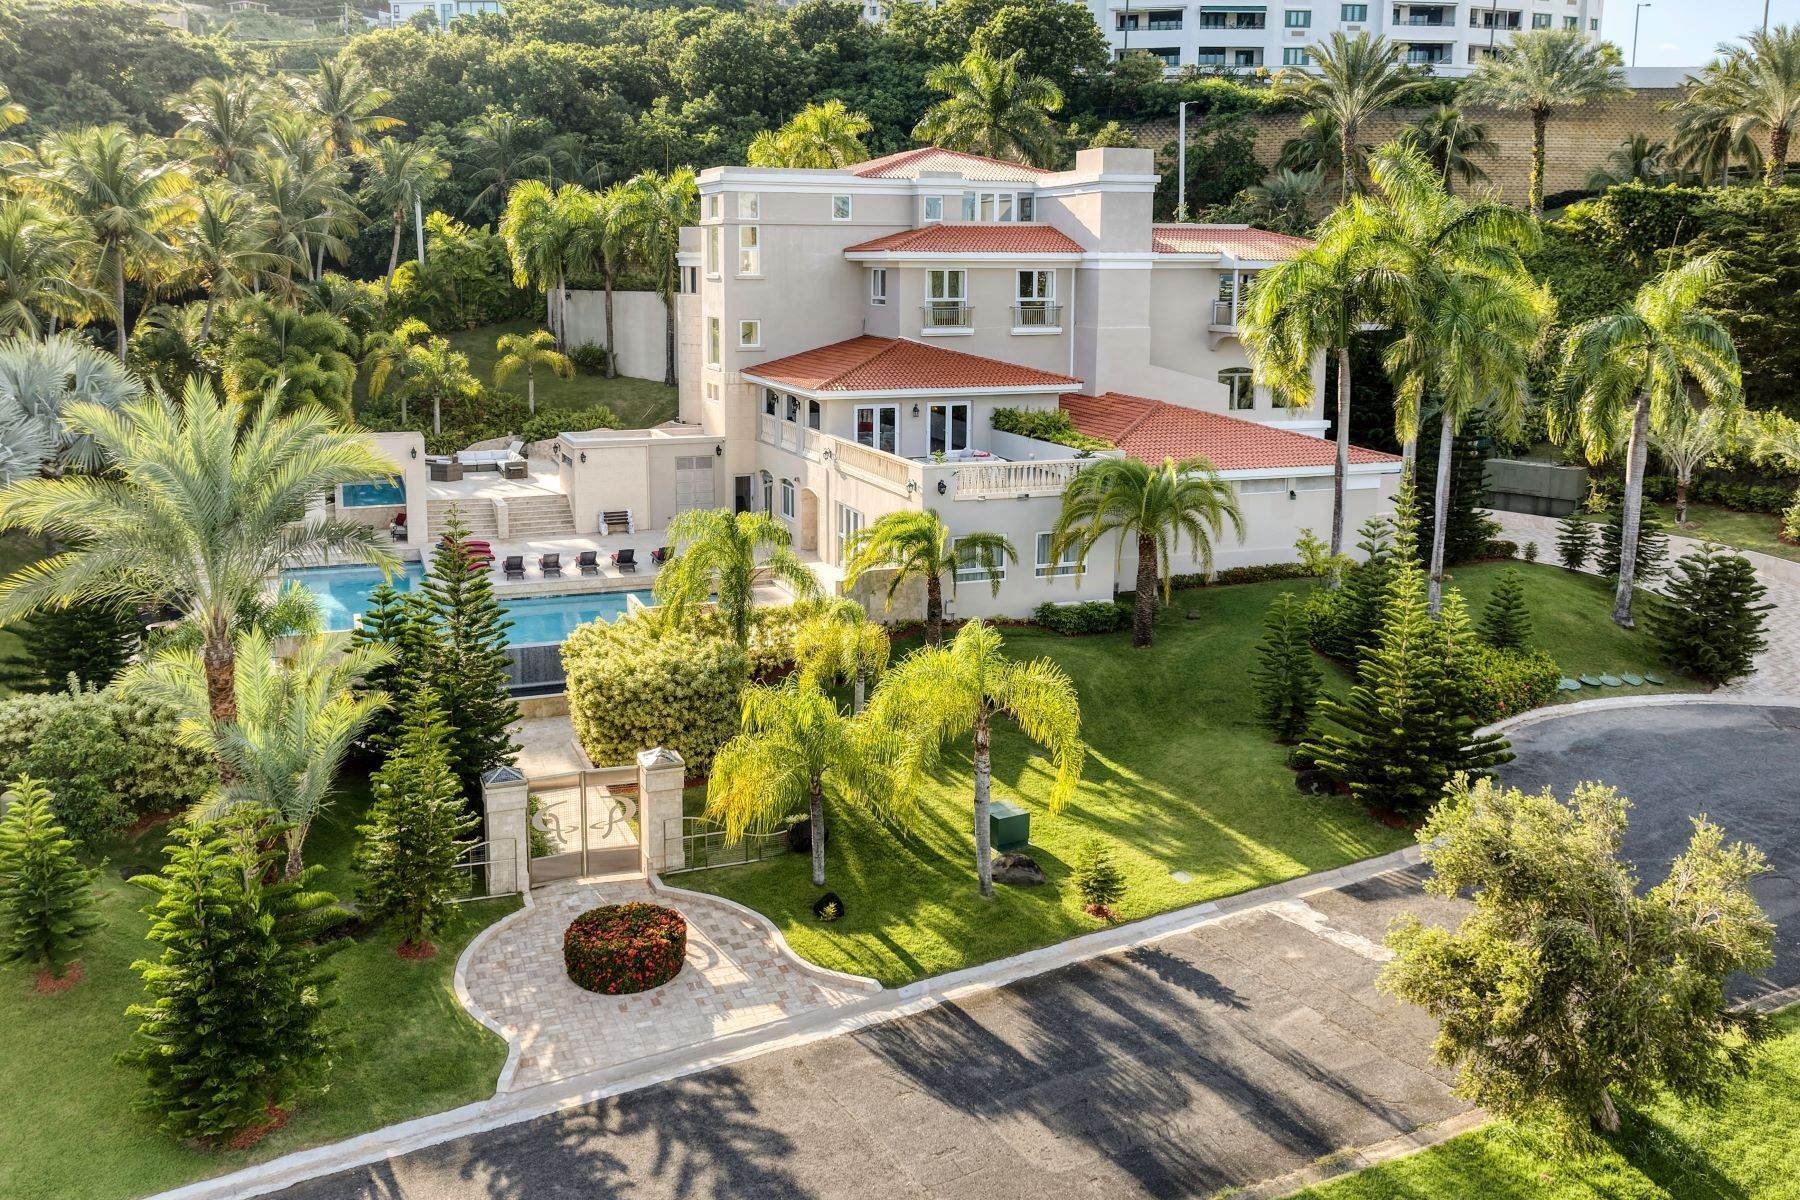 Property for Sale at One of a Kind Estate in Rio Mar 57-58 Las Casas Rio Grande, 00745 Puerto Rico